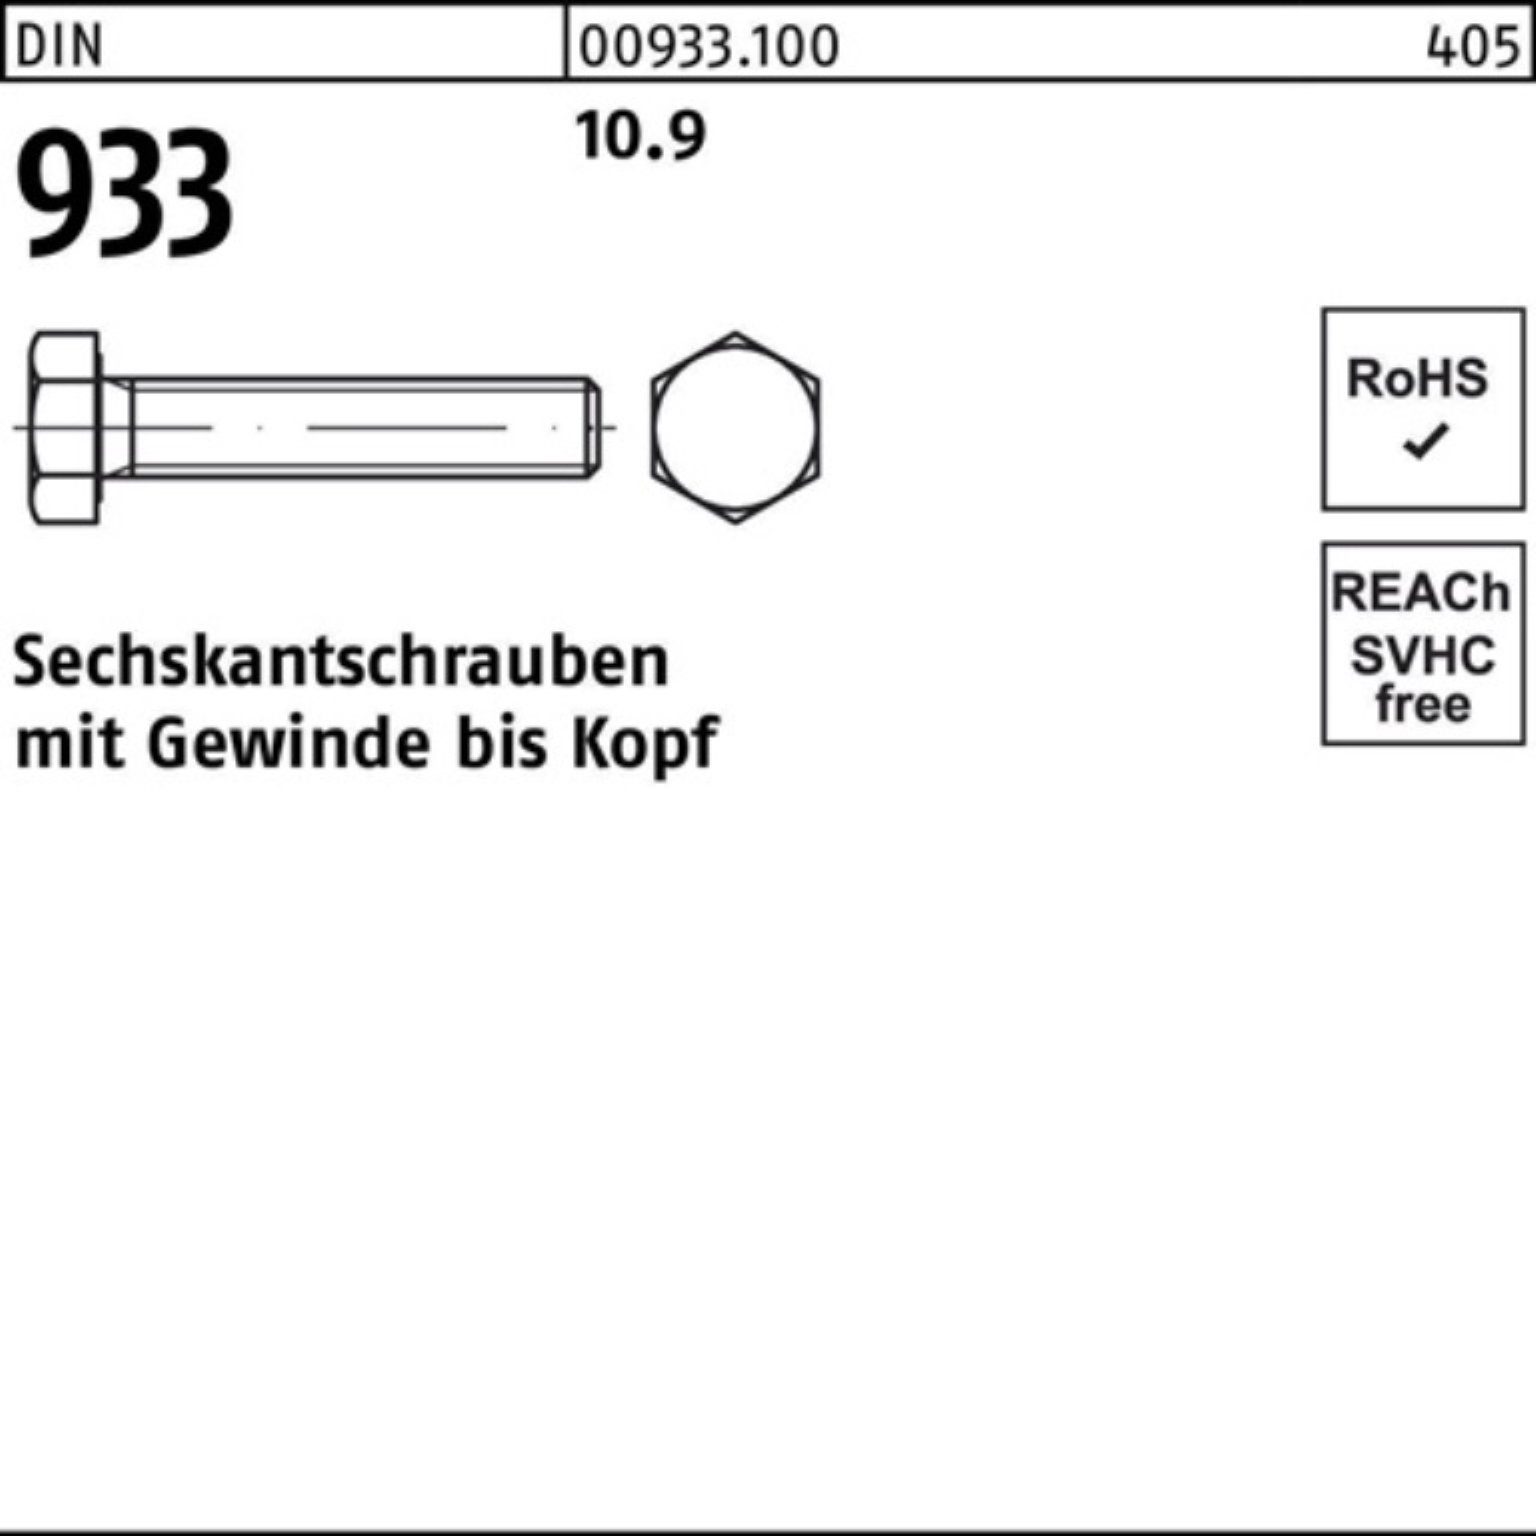 Reyher Sechskantschraube 100er VG 933 M30x 933 DIN 1 DIN Stück Sechskantschraube 180 Pack 10.9